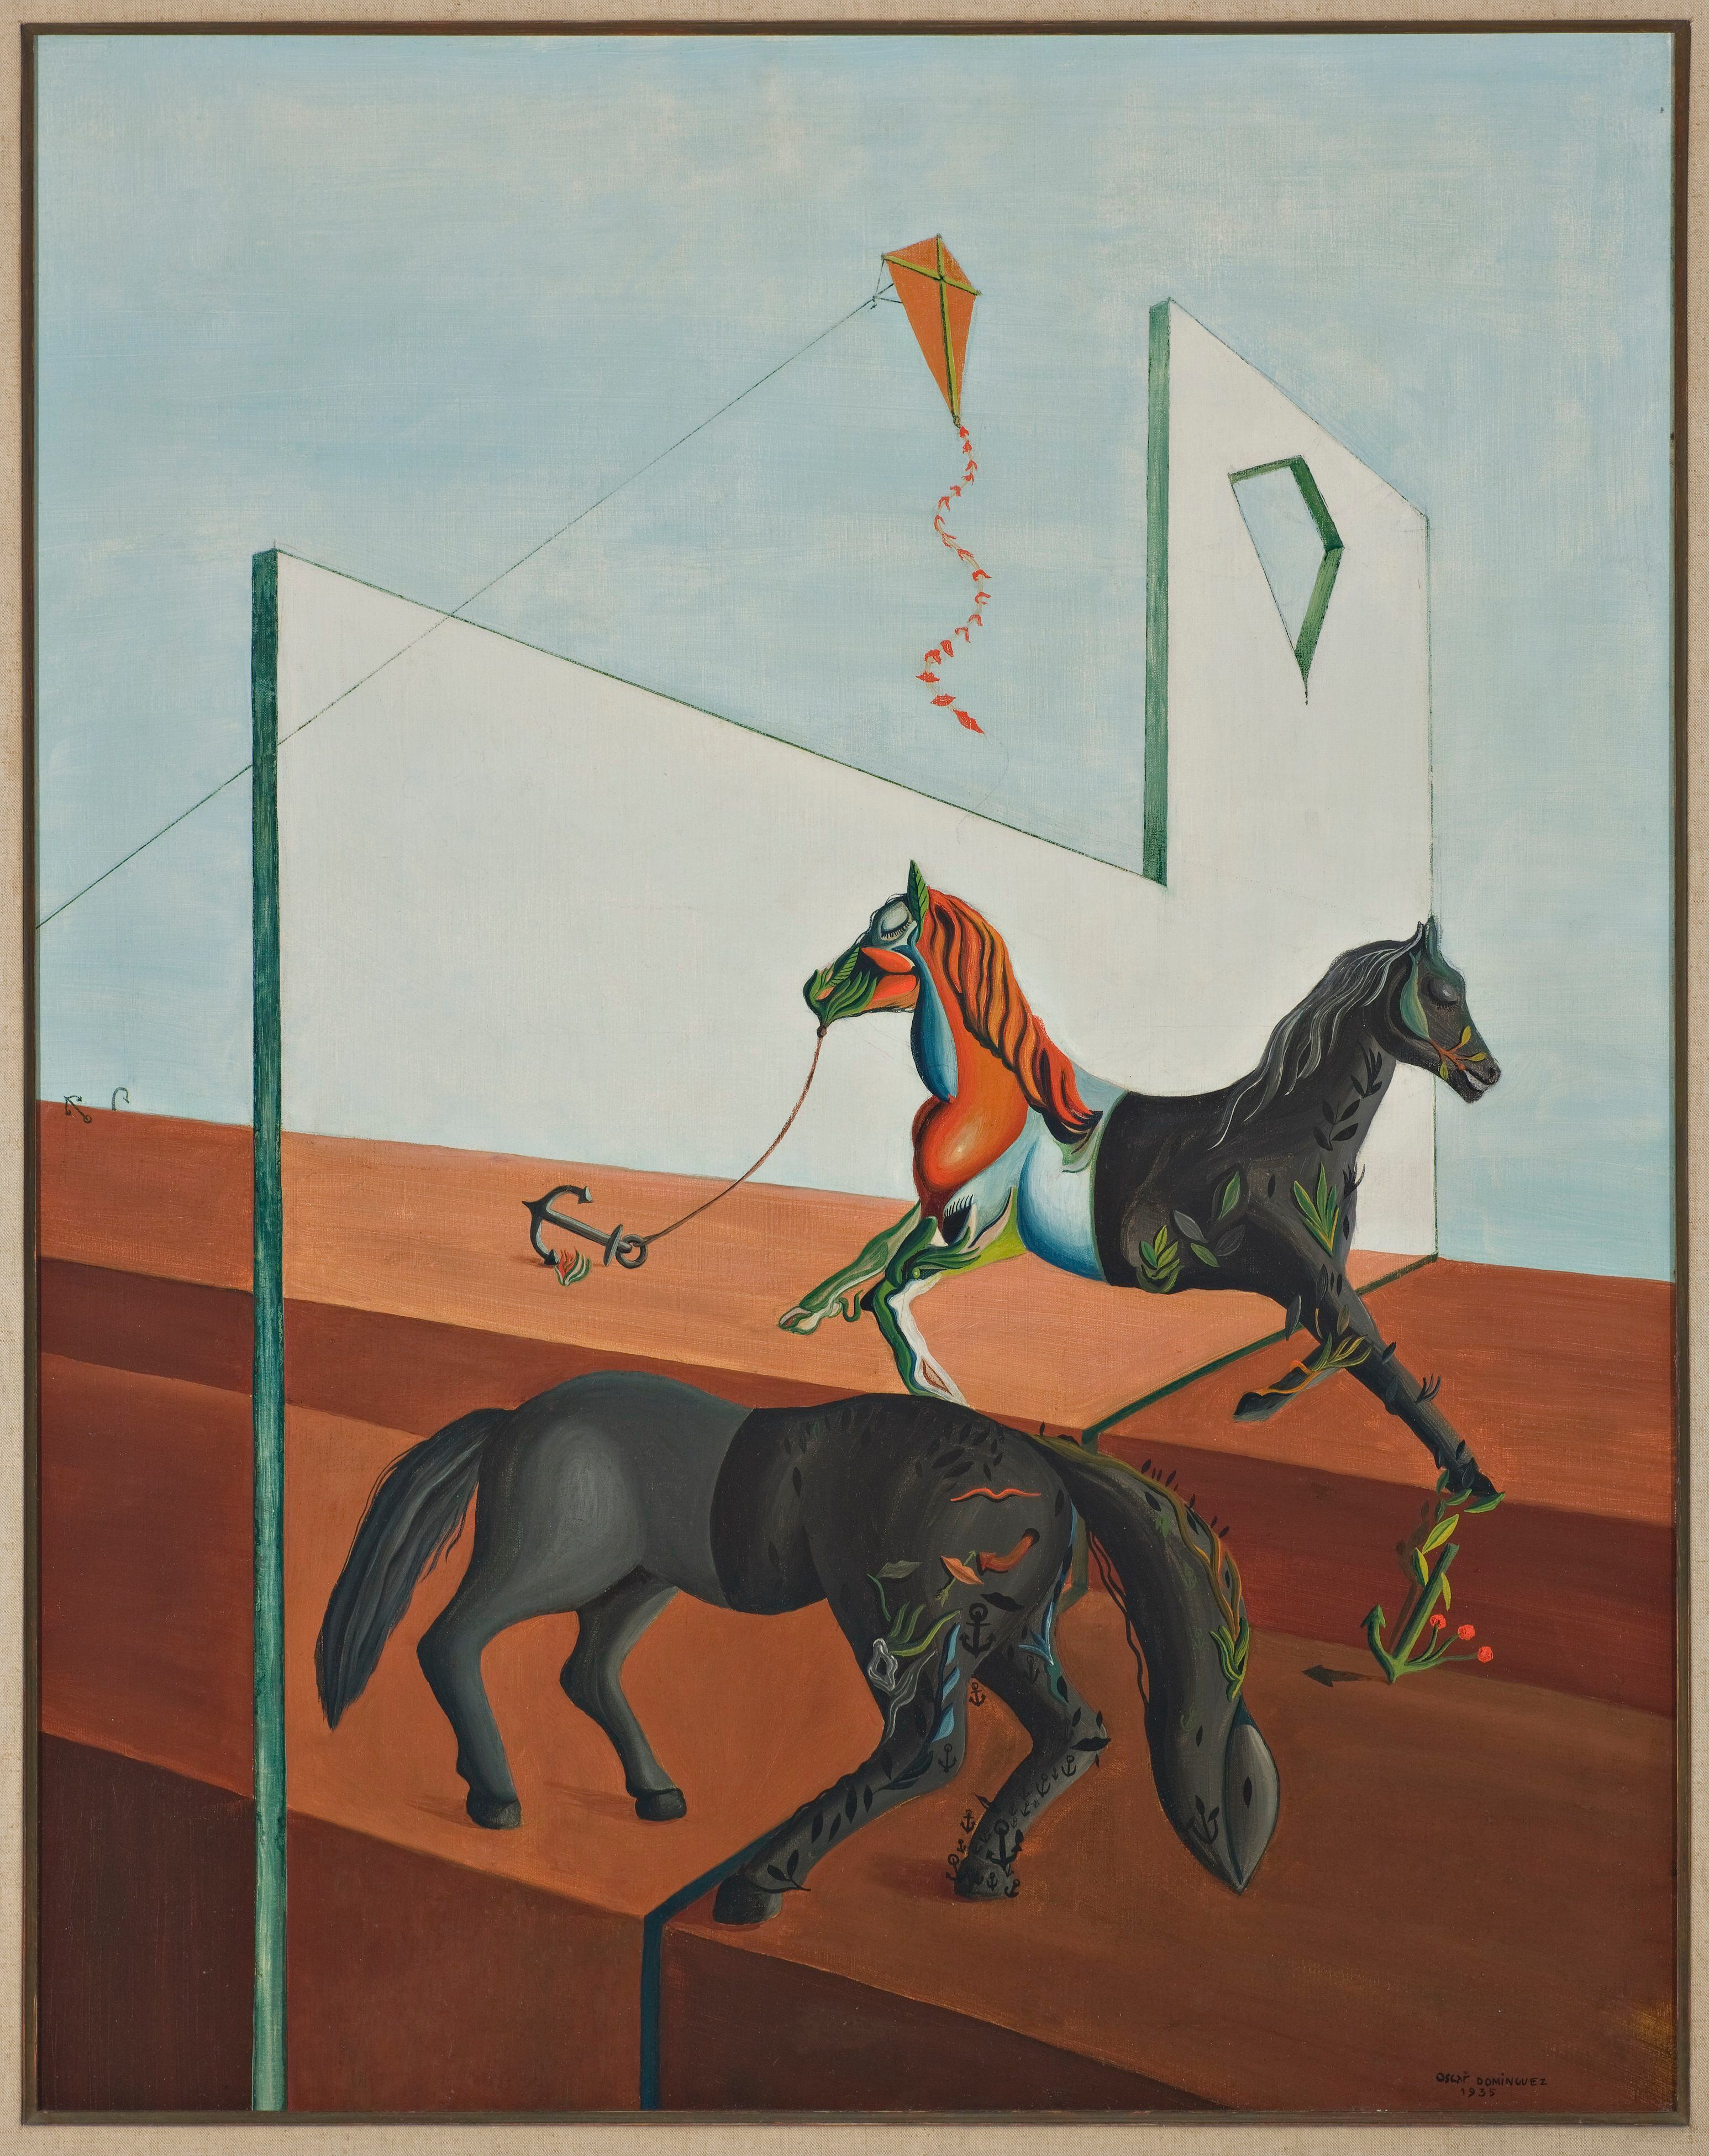 'Le dimanche' (1935). Colección Óscar Domínguez